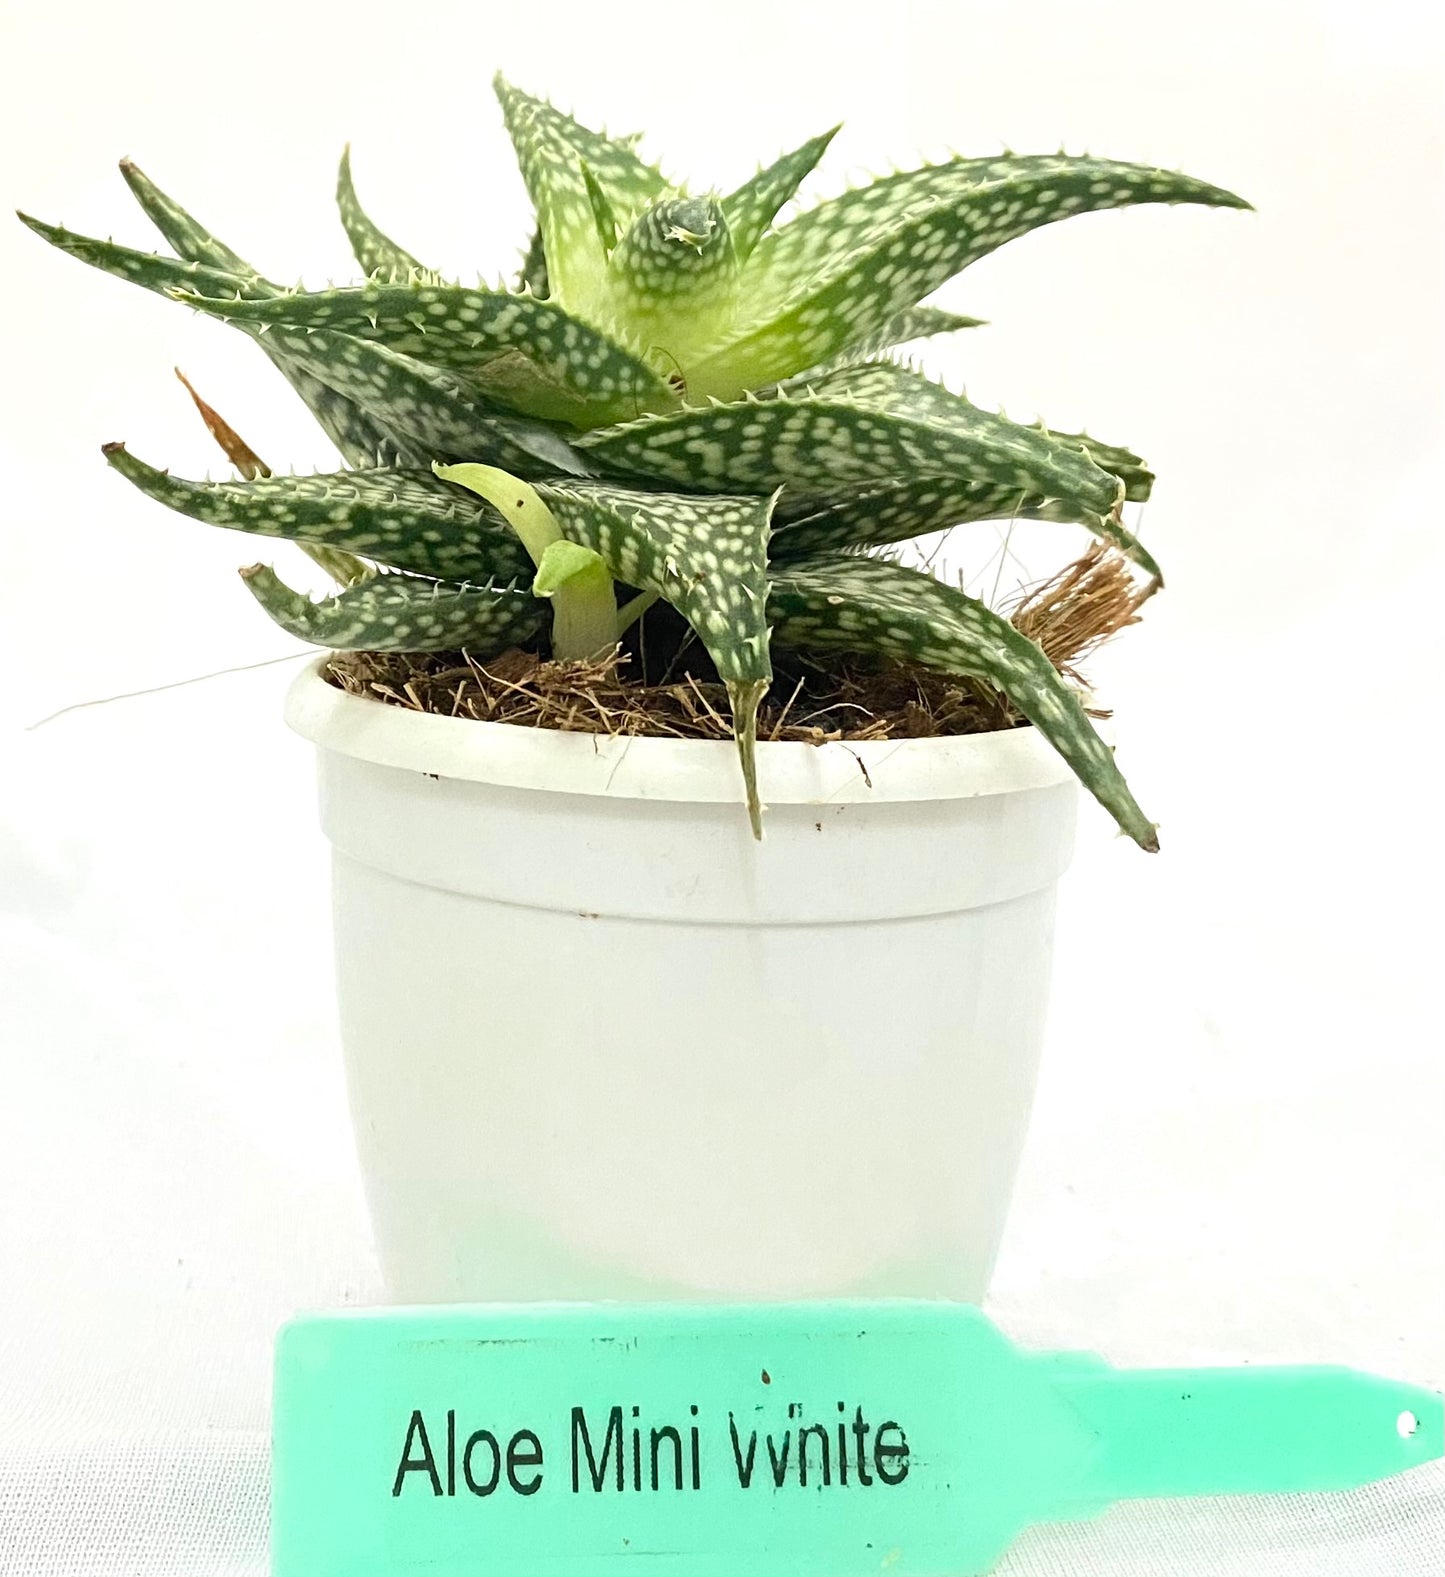 Aloe Miniwhite